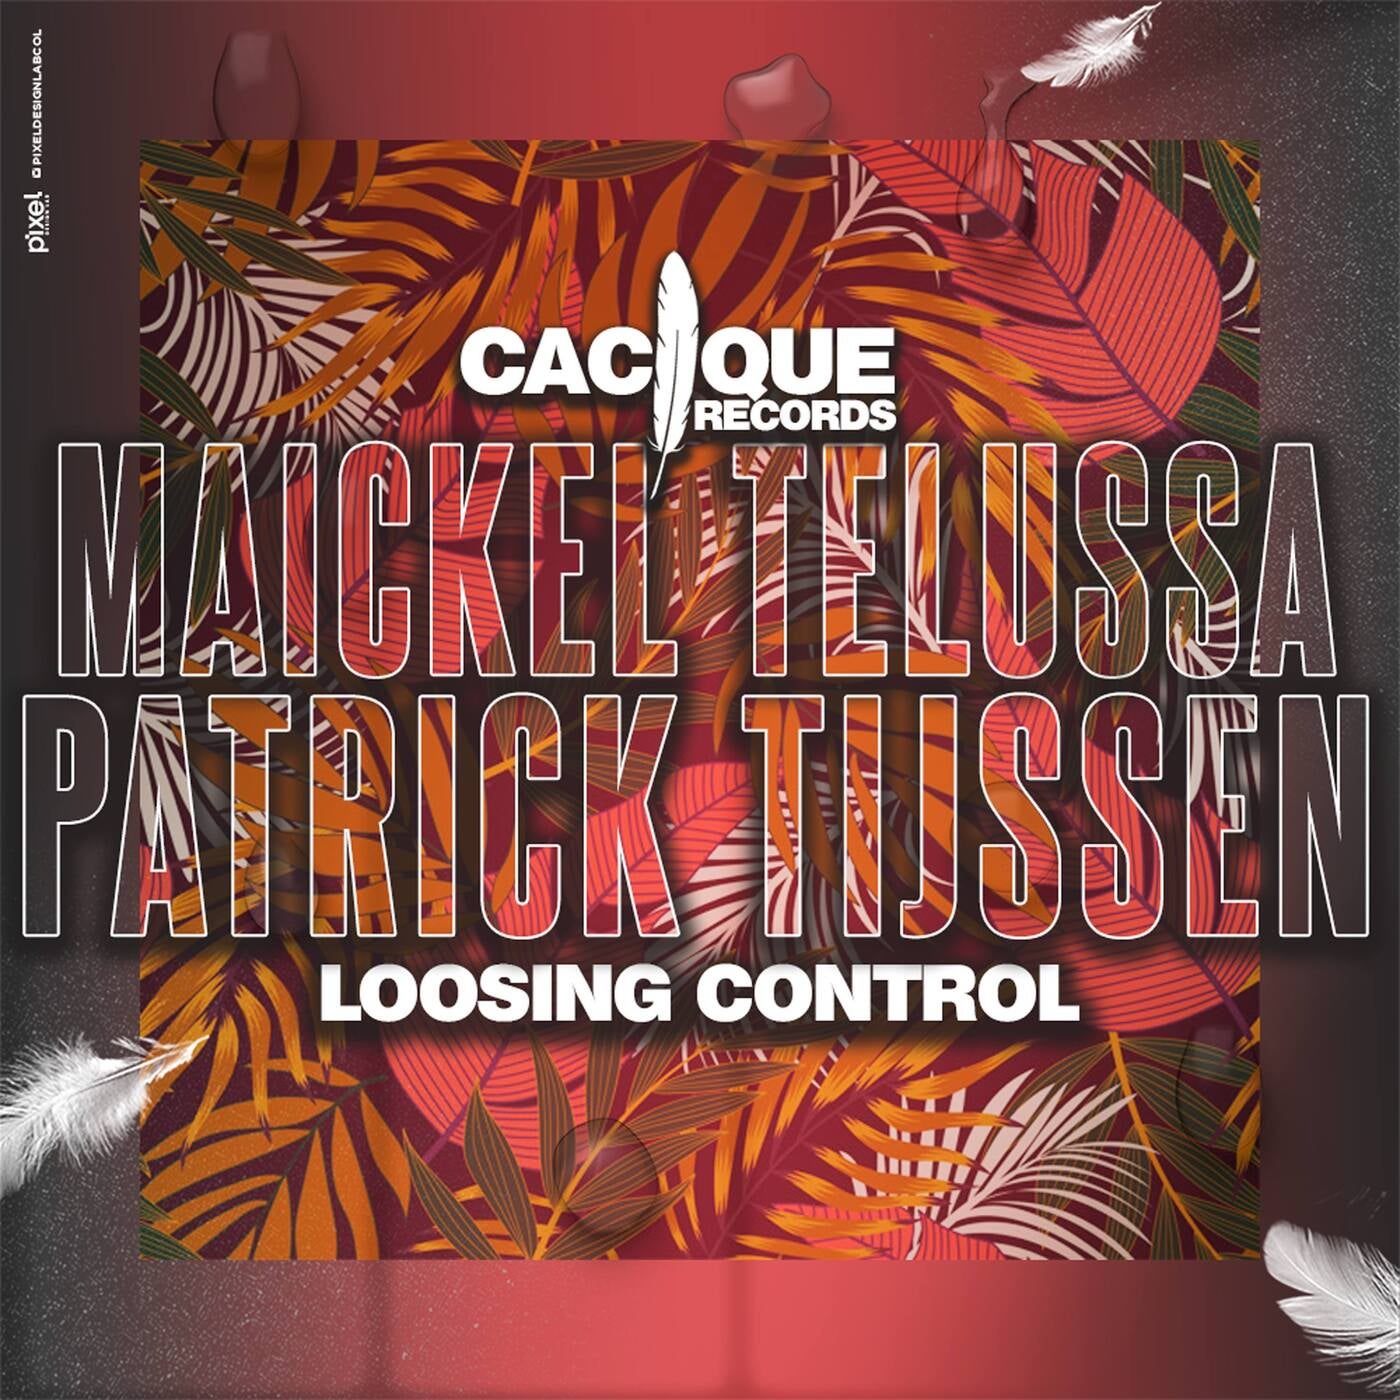 Maickel Telussa & Patrick Tijssen - Loosing Control [Cacique Records]